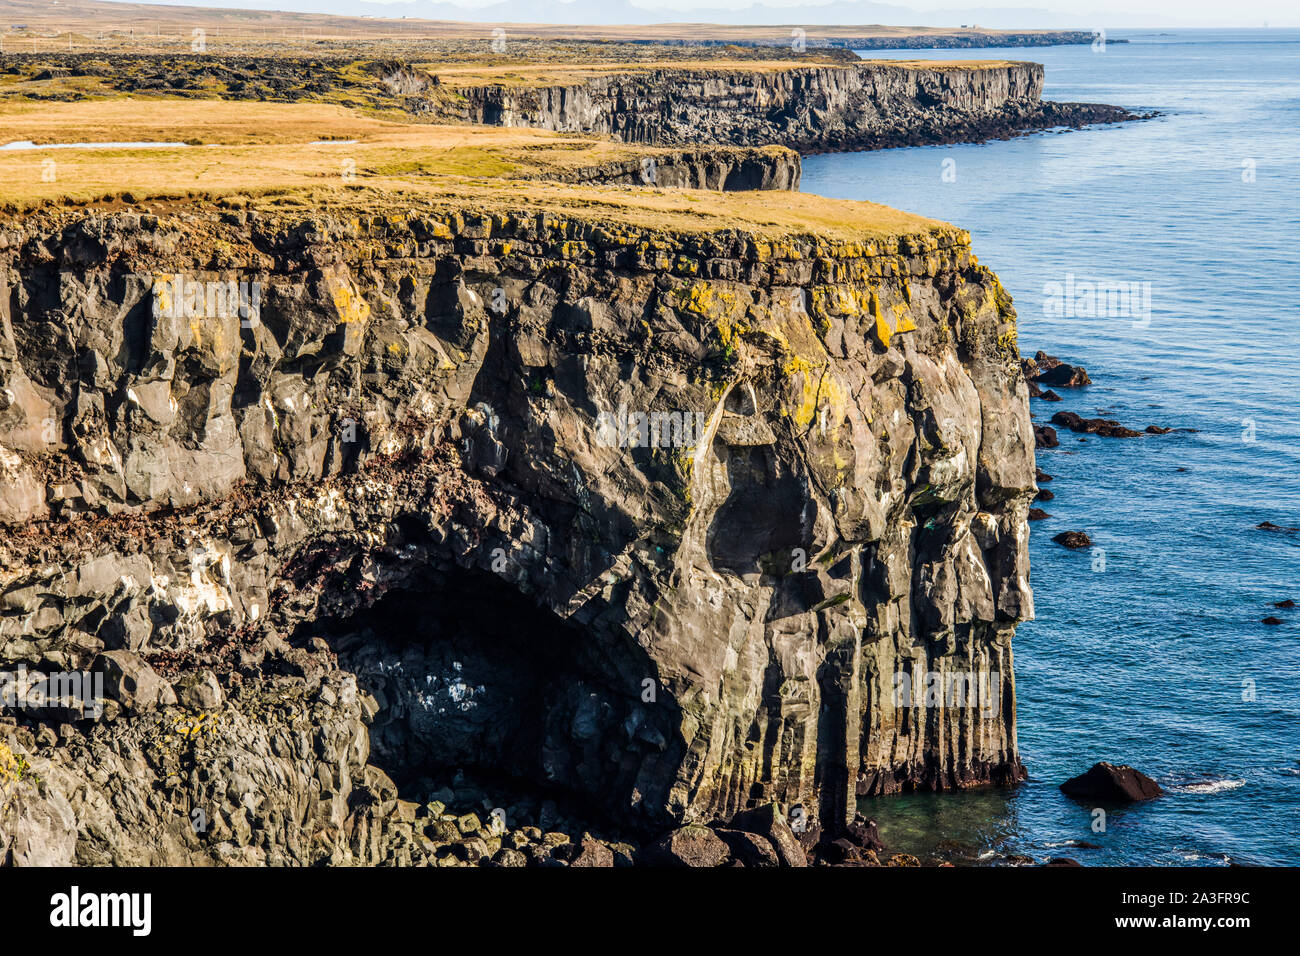 La côte le long de l'Londrangar Rocks montrant les falaises de basalte avec colonnes. d'une journée ensoleillée sur la péninsule de Snaefellsness Islande de l'Ouest.. Banque D'Images